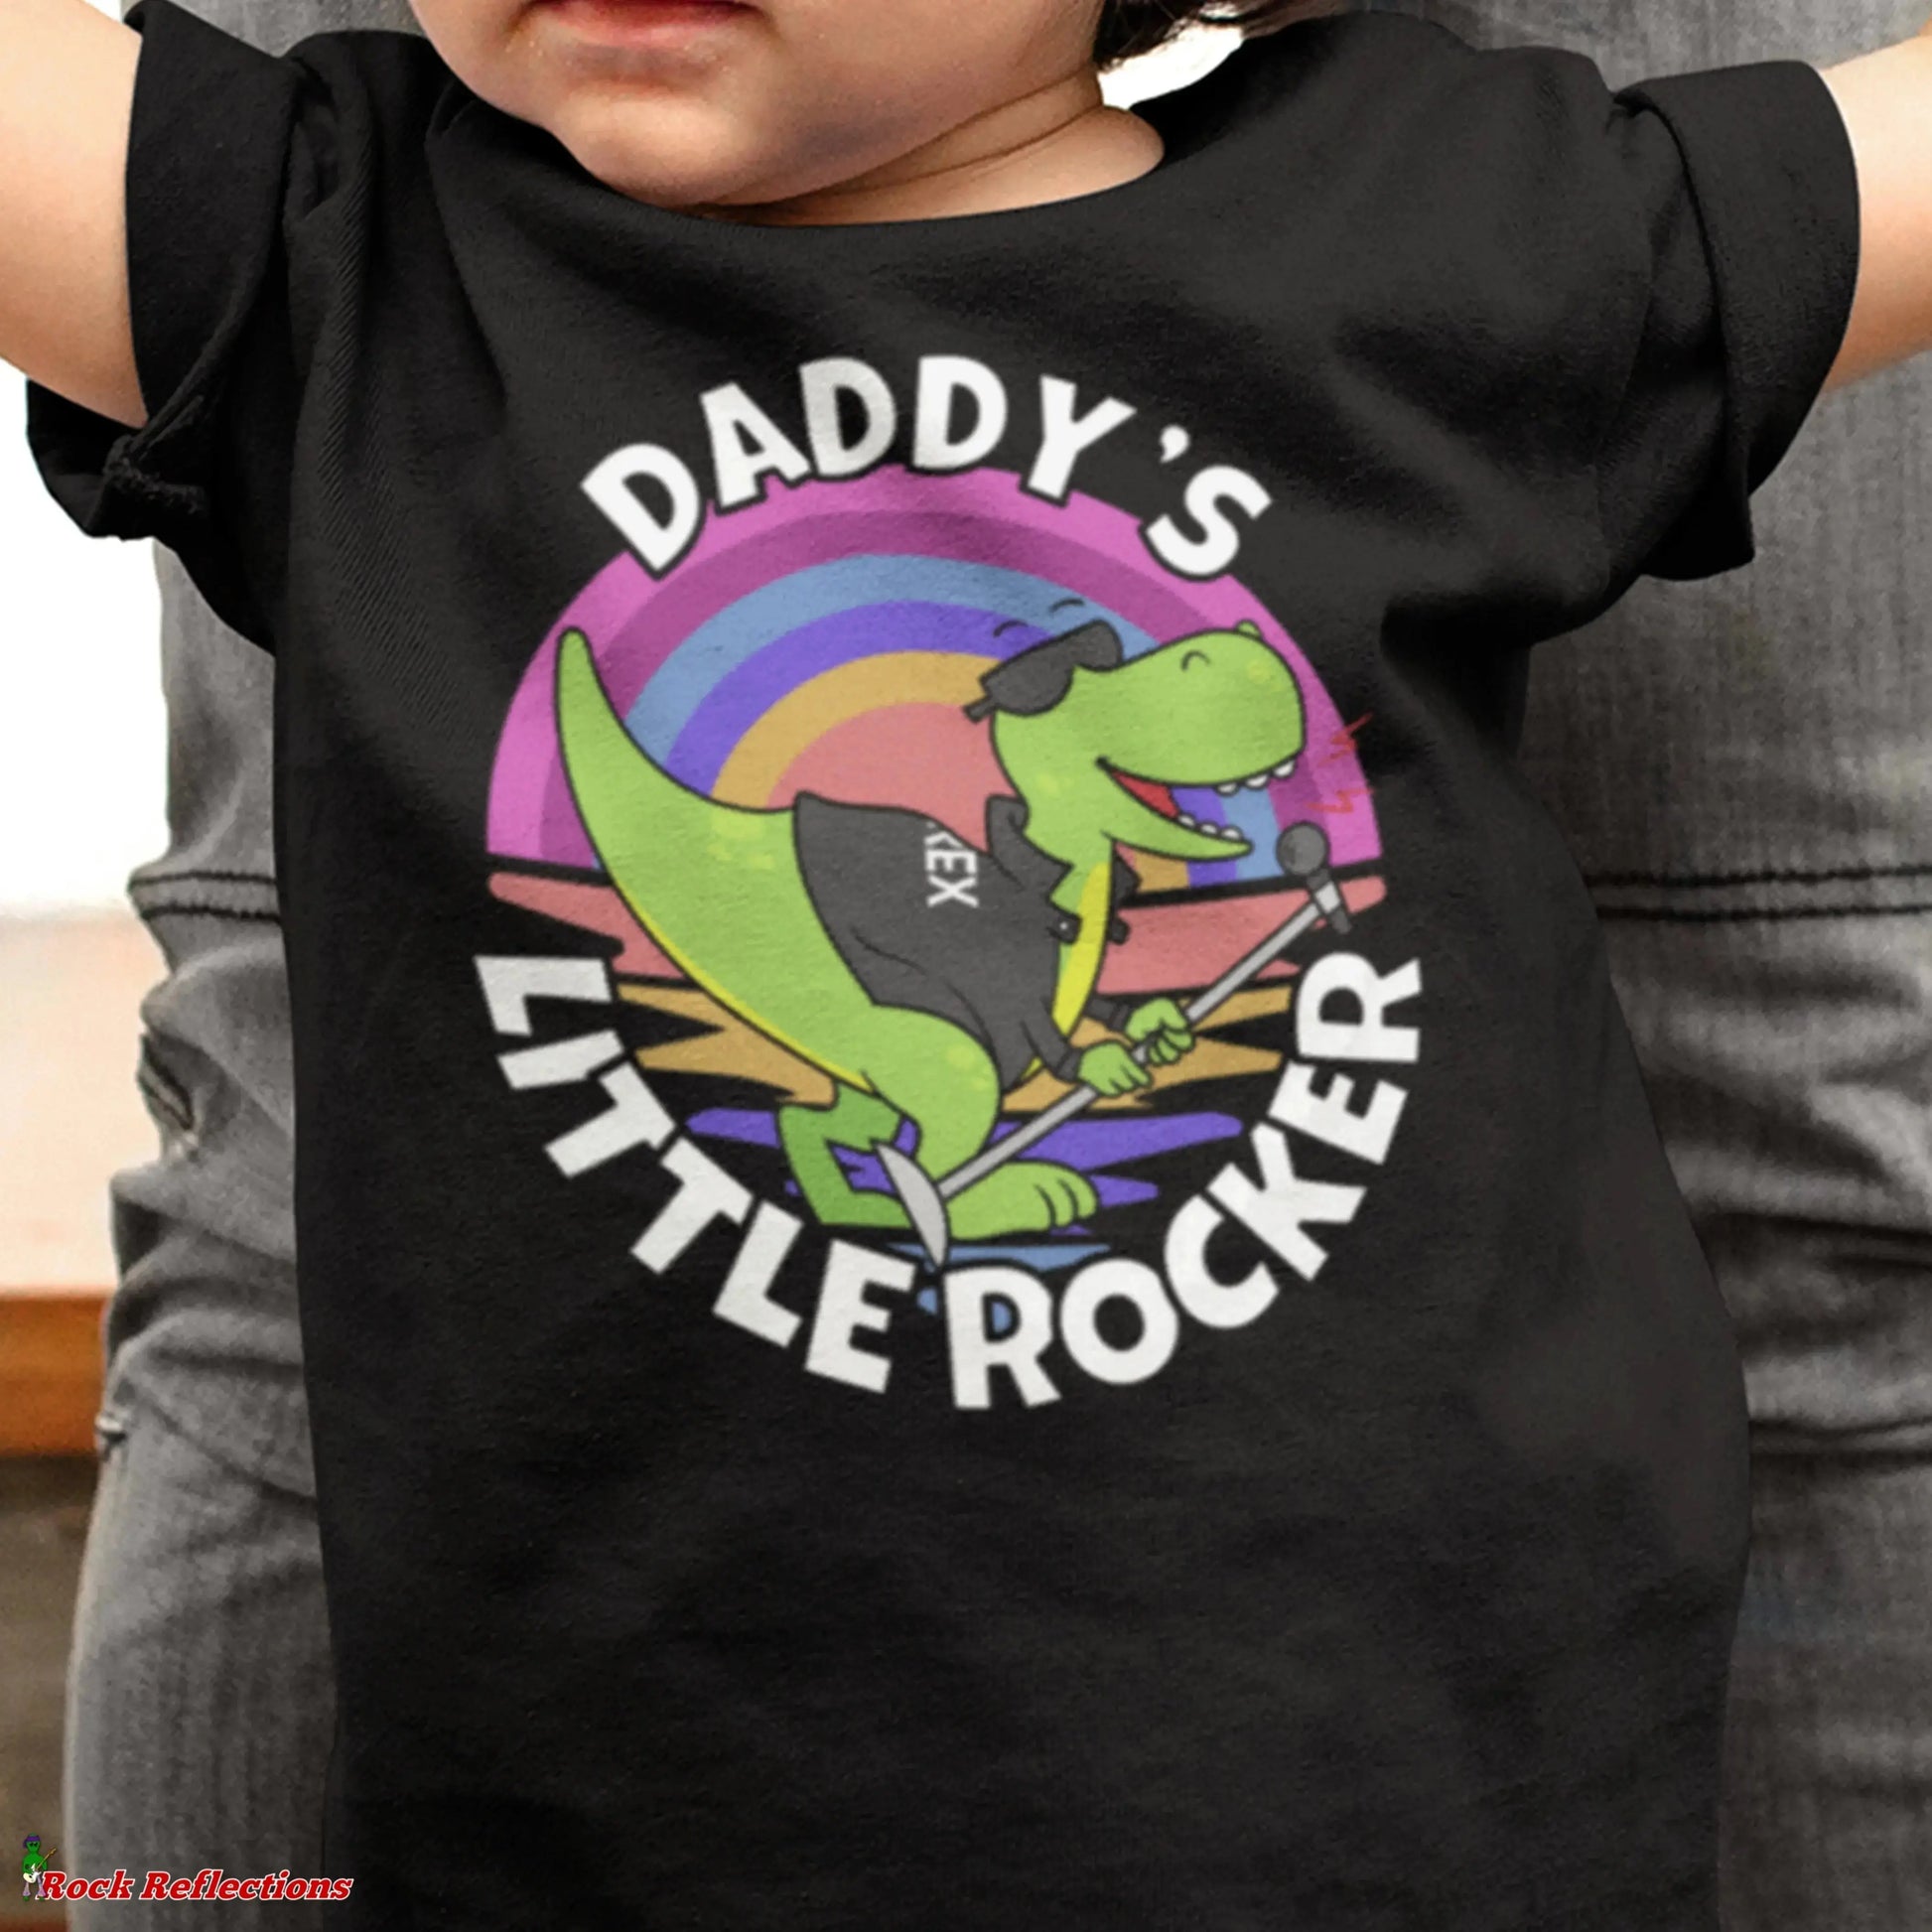 Daddy's Little Rocker Rex SPOD